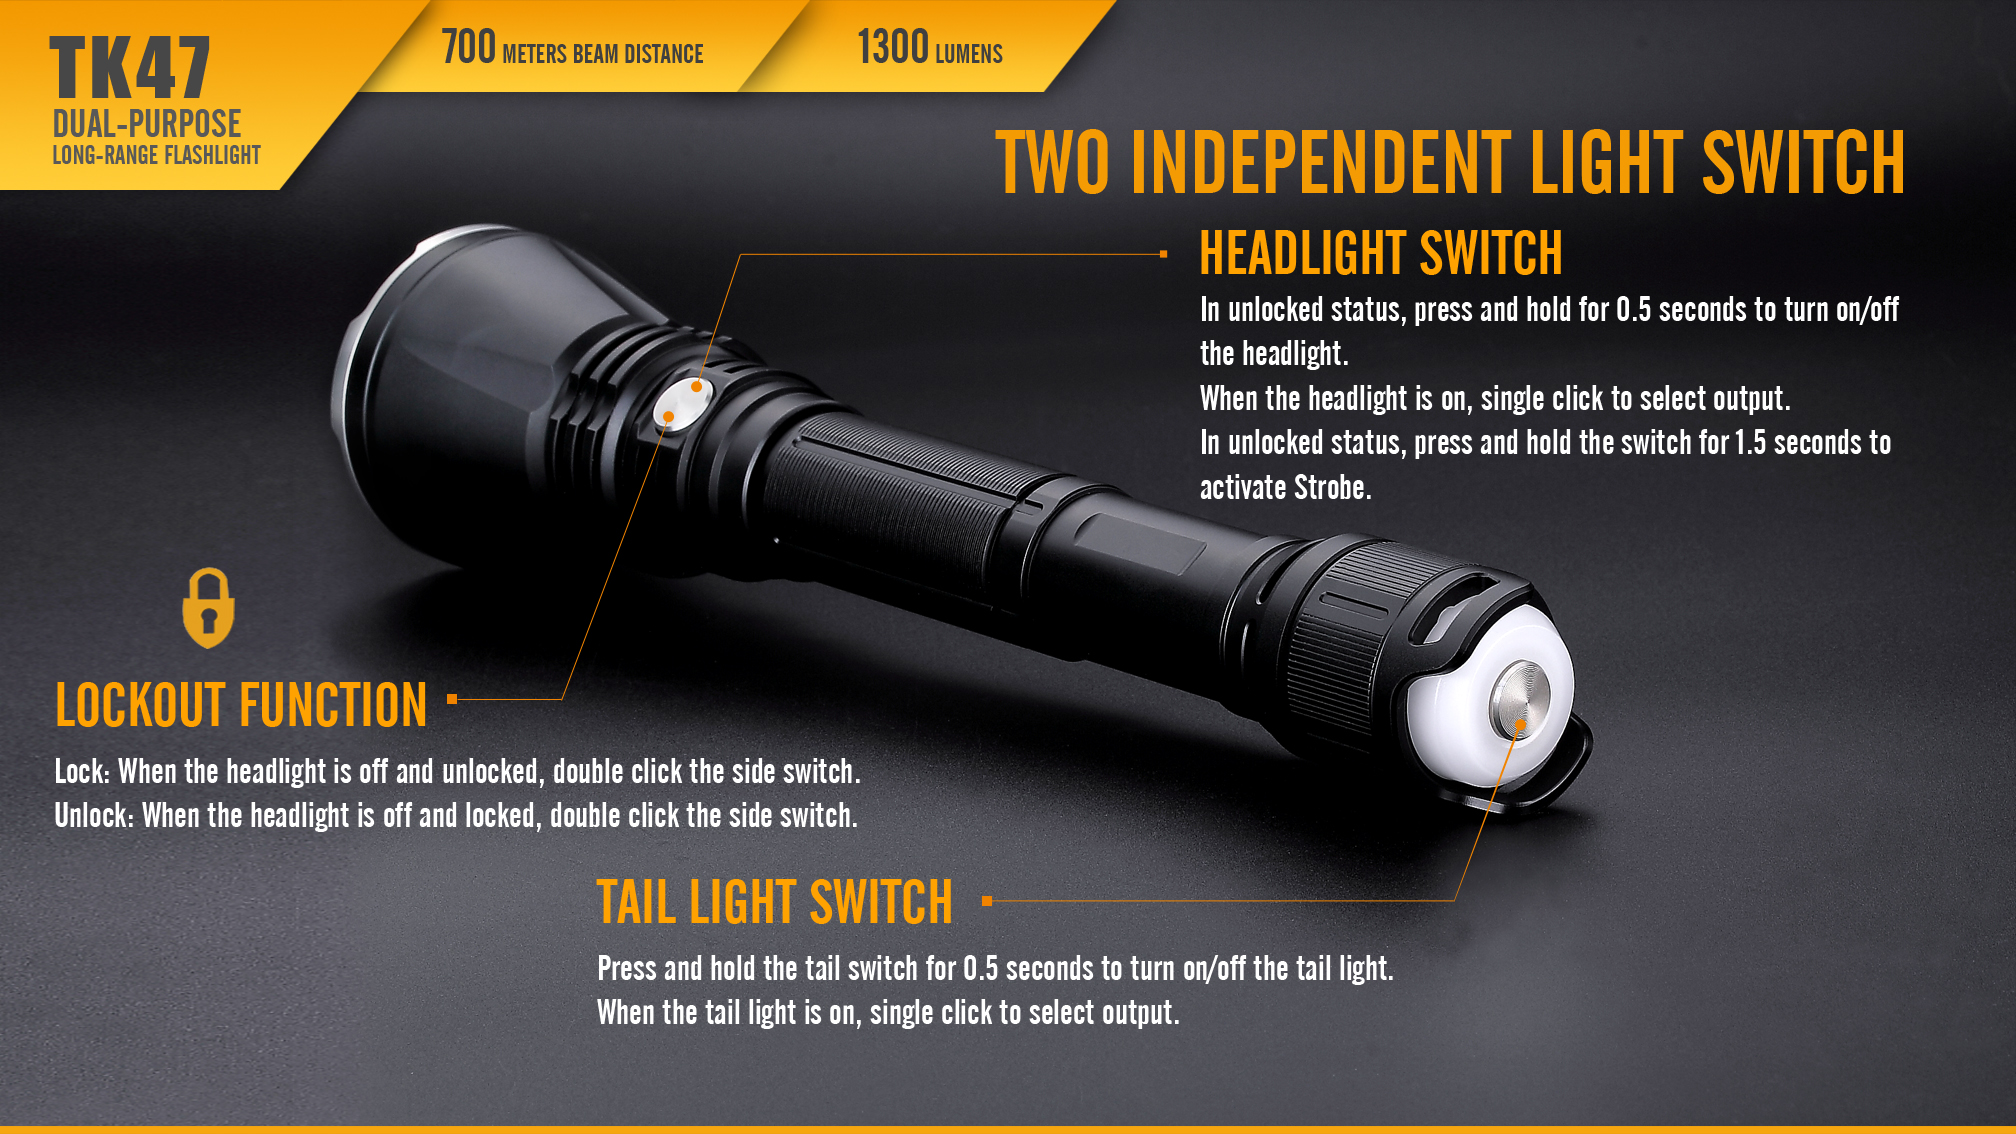 Fenix TK47 Dual-Purpose LED Flashlight Independent Switches